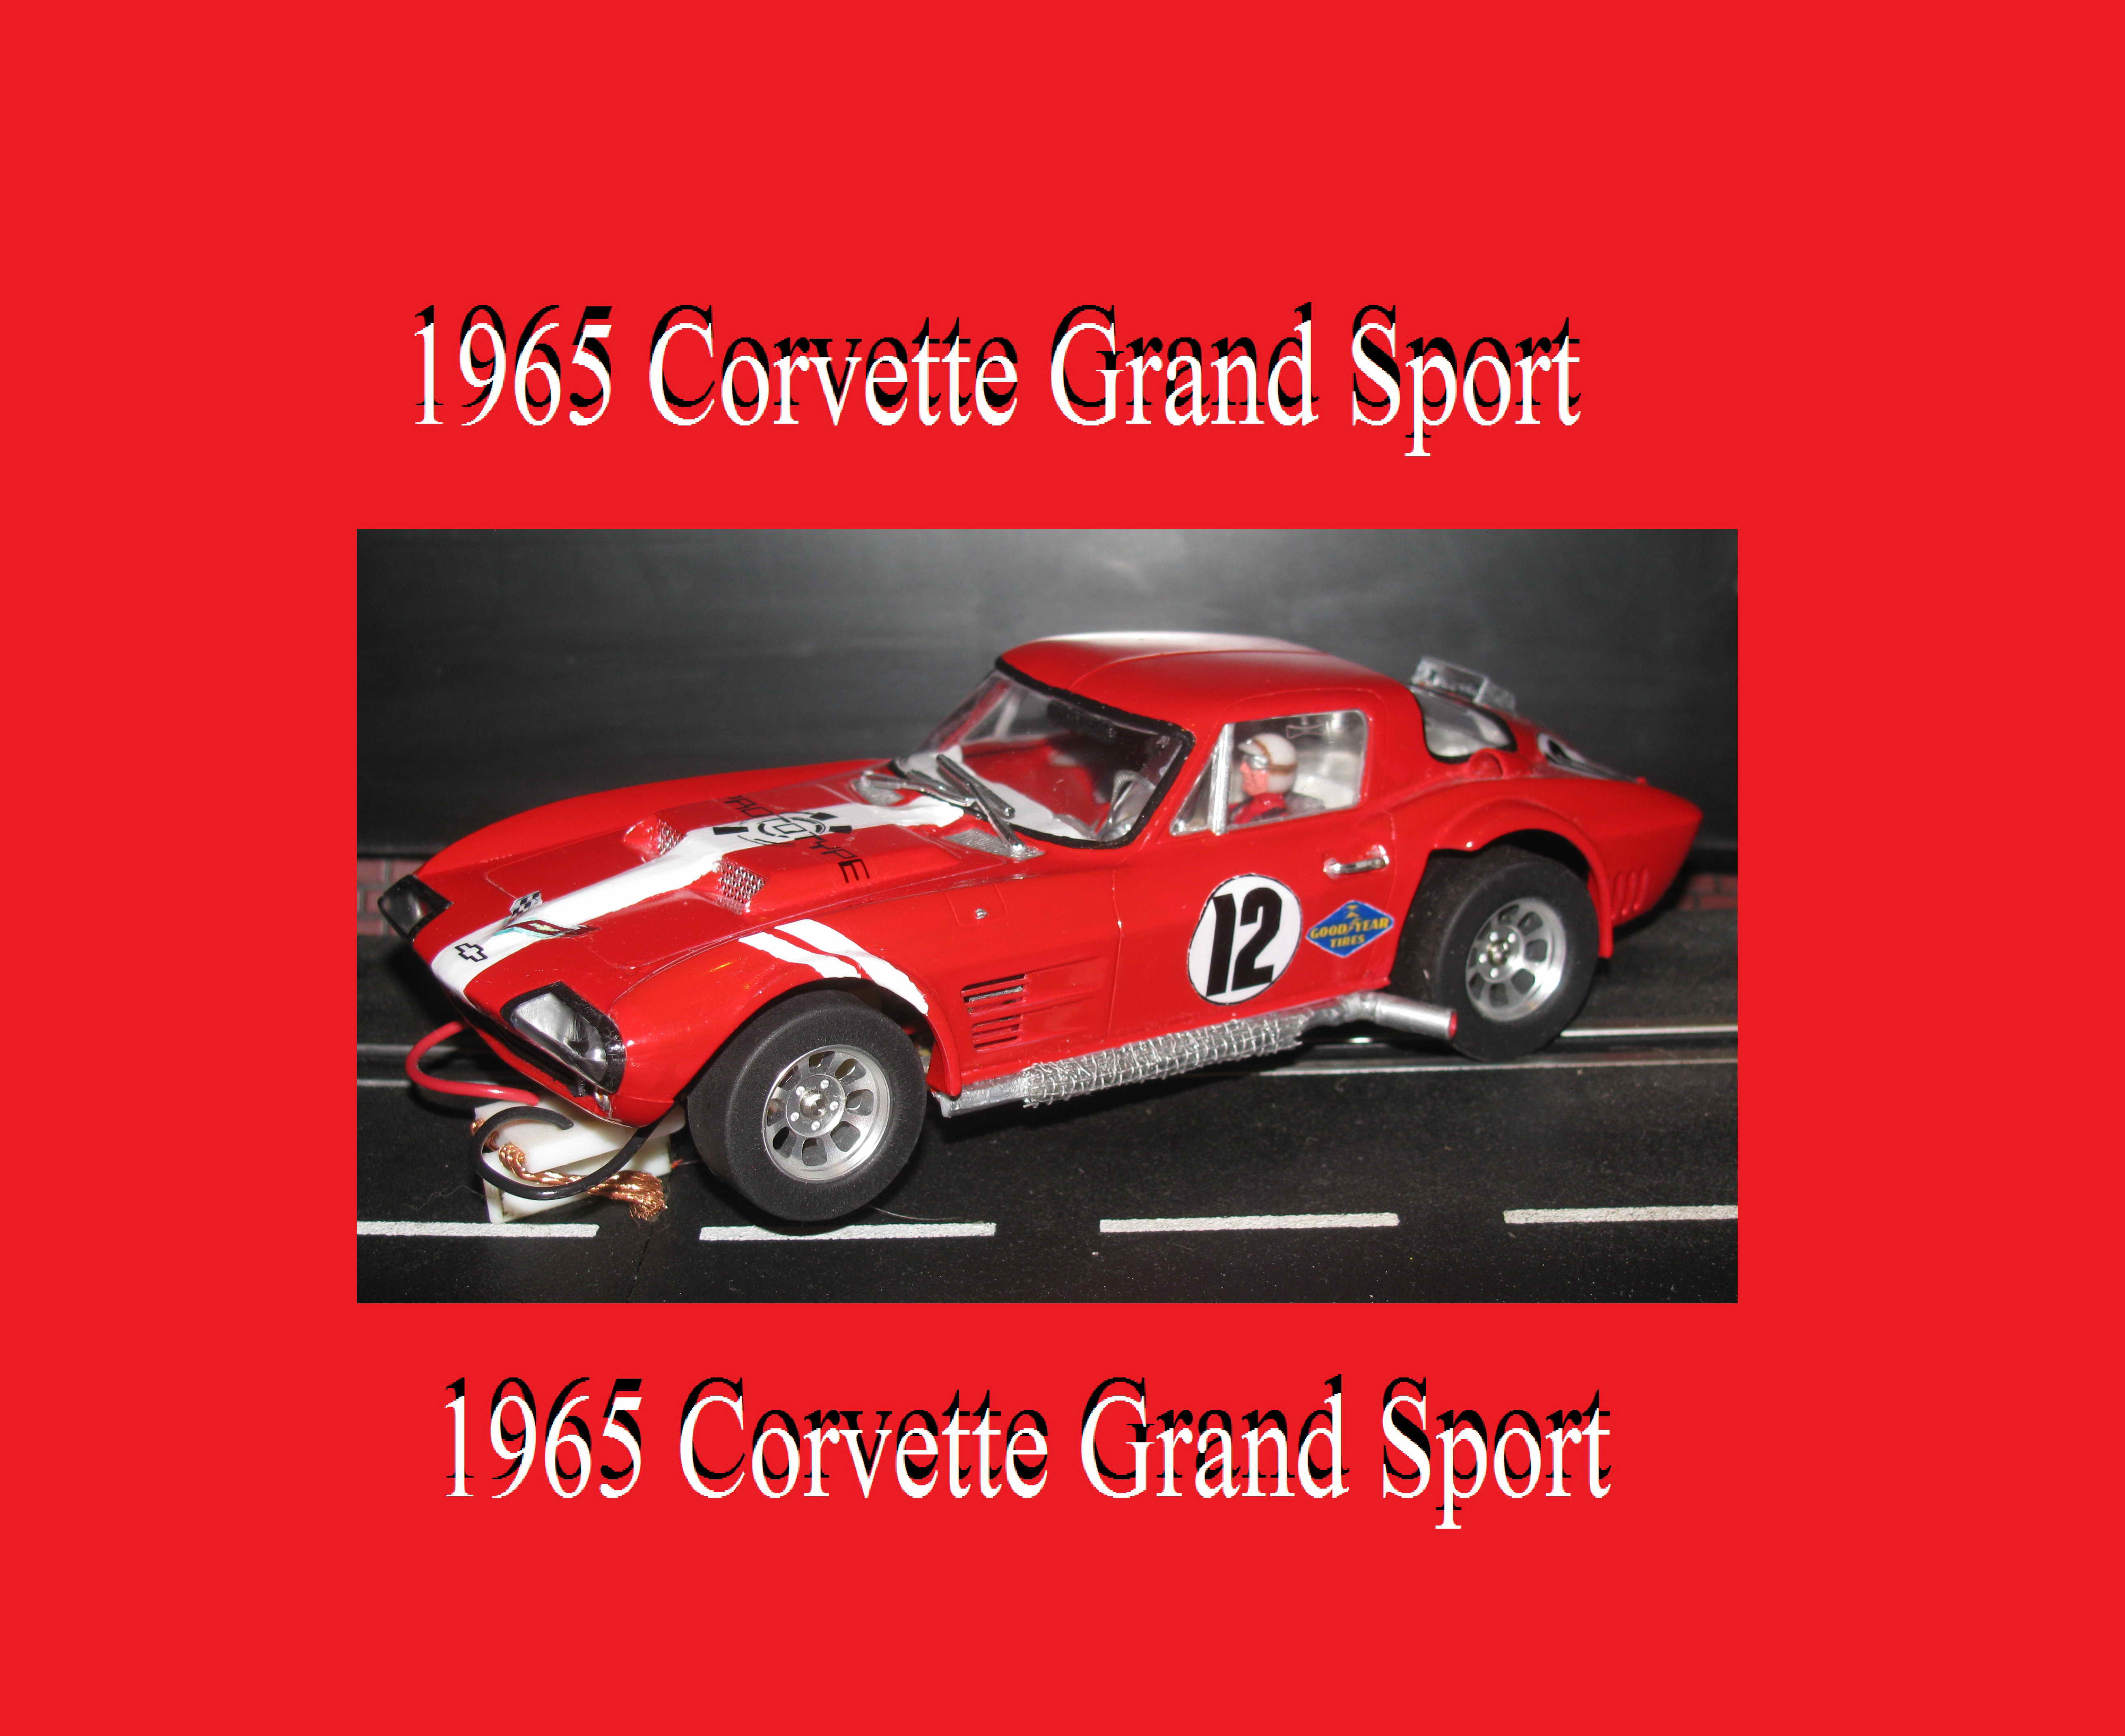 Vintage 1965 Corvette Grand Sport slot car 1/24 scale